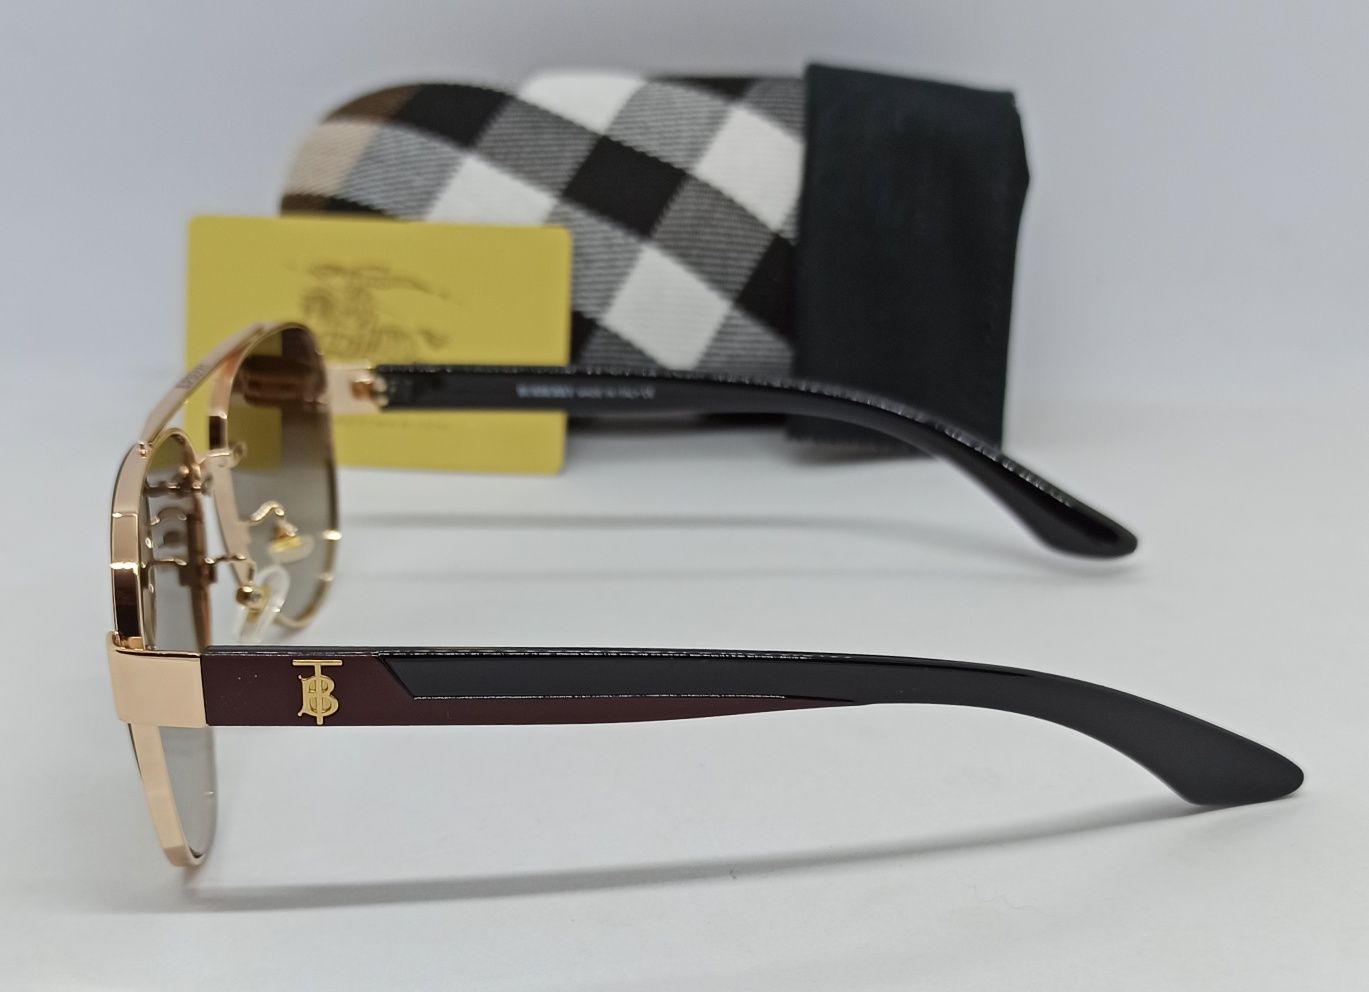 Burberry очки капли мужские коричневый градиент в золотом металле